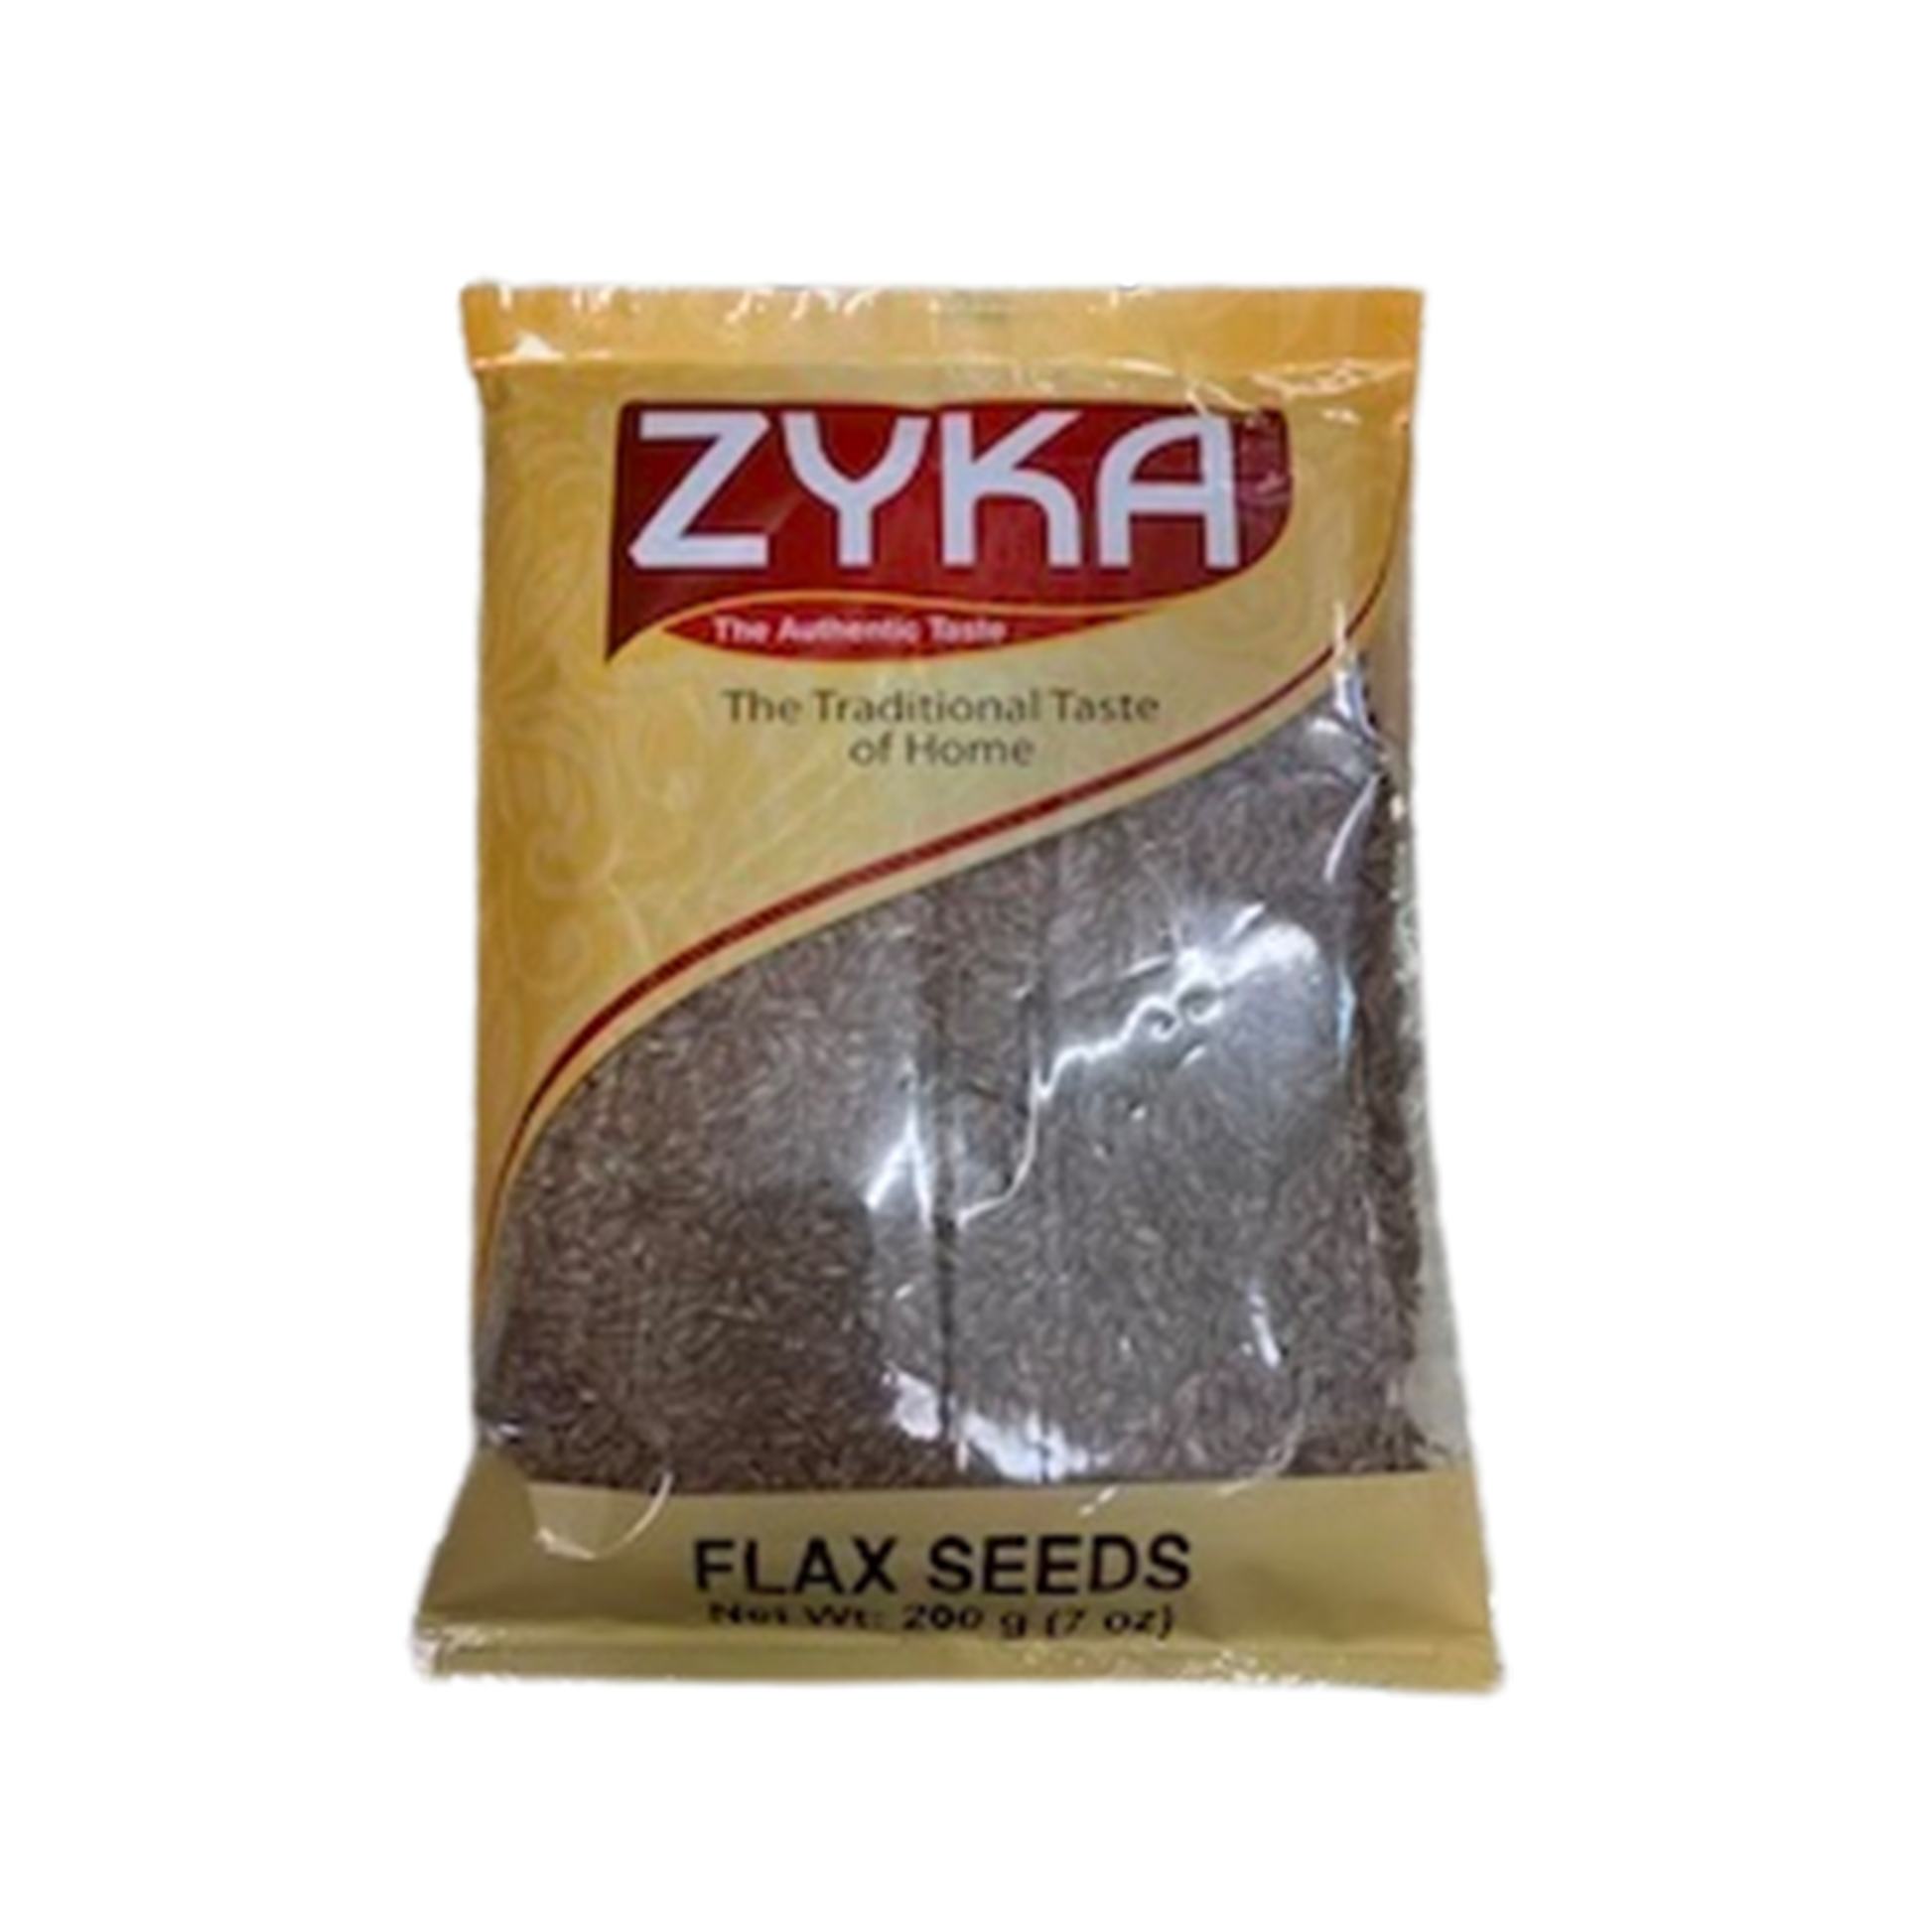 Zyka Flax Seed 15x200gm VishalBazar